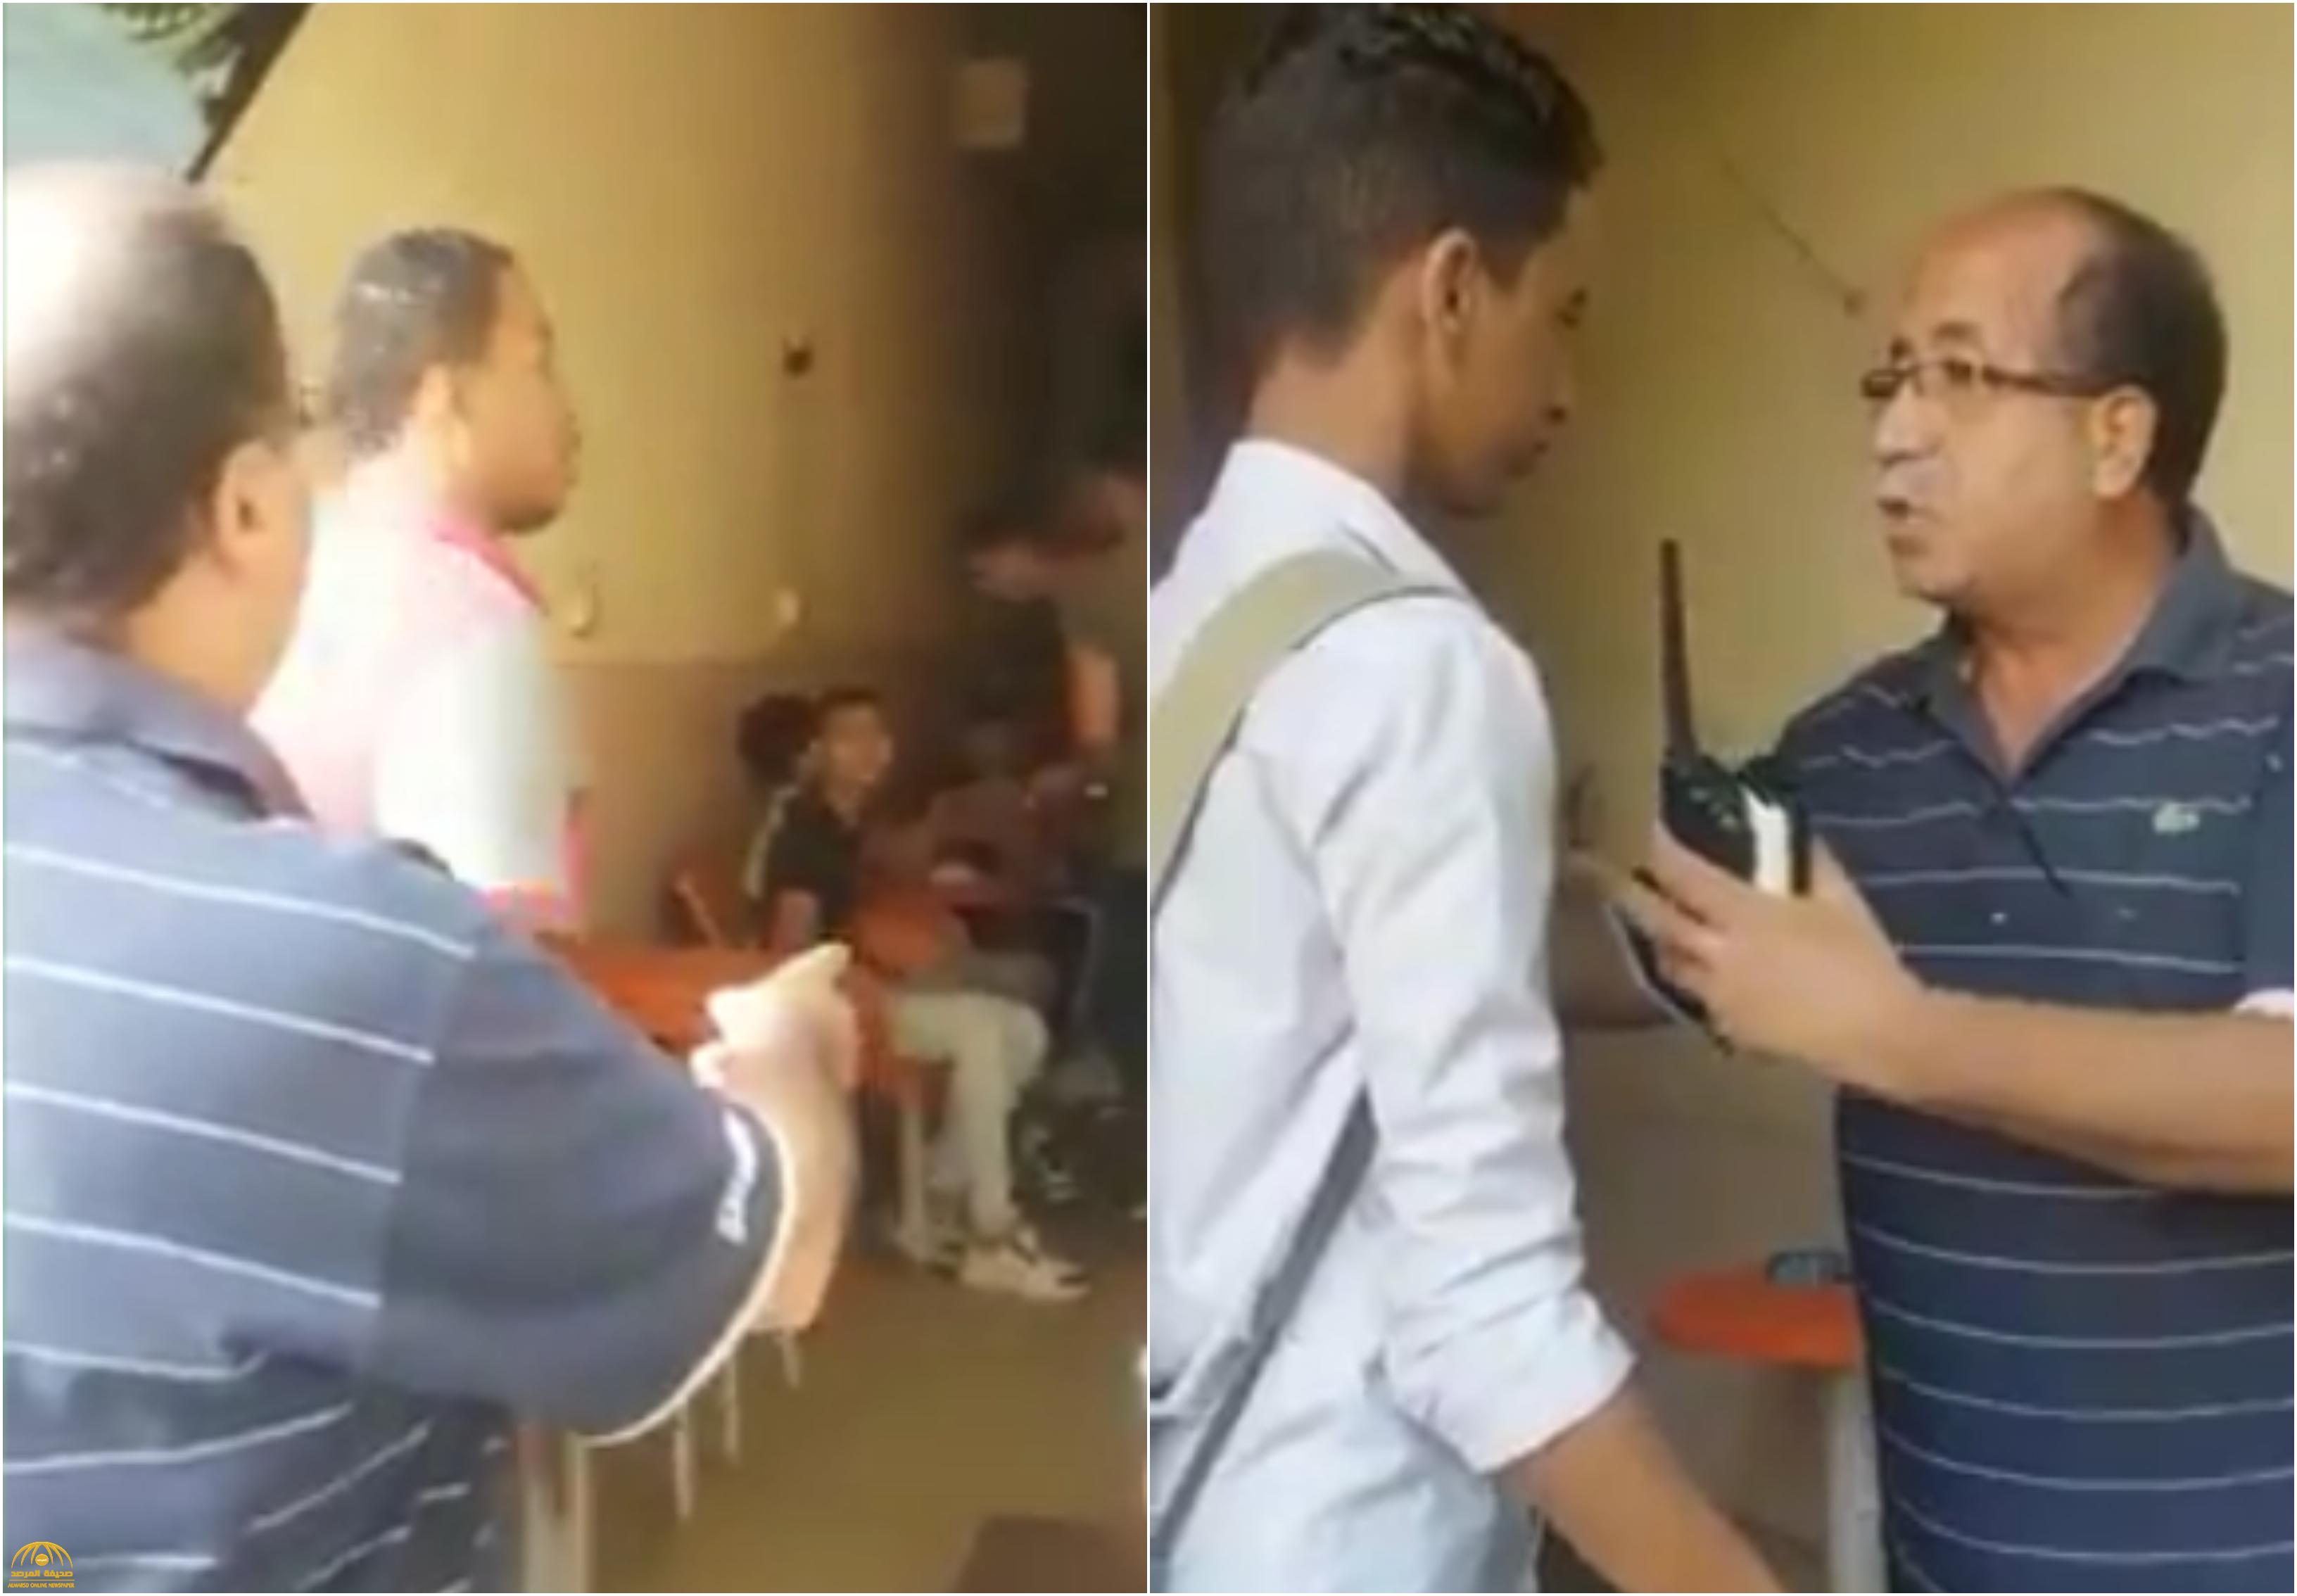 شاهد : ردة فعل رئيس حي في القاهرة تفاجأ بوجود طلاب هاربين من المدرسة لتدخين "الشيشة"!